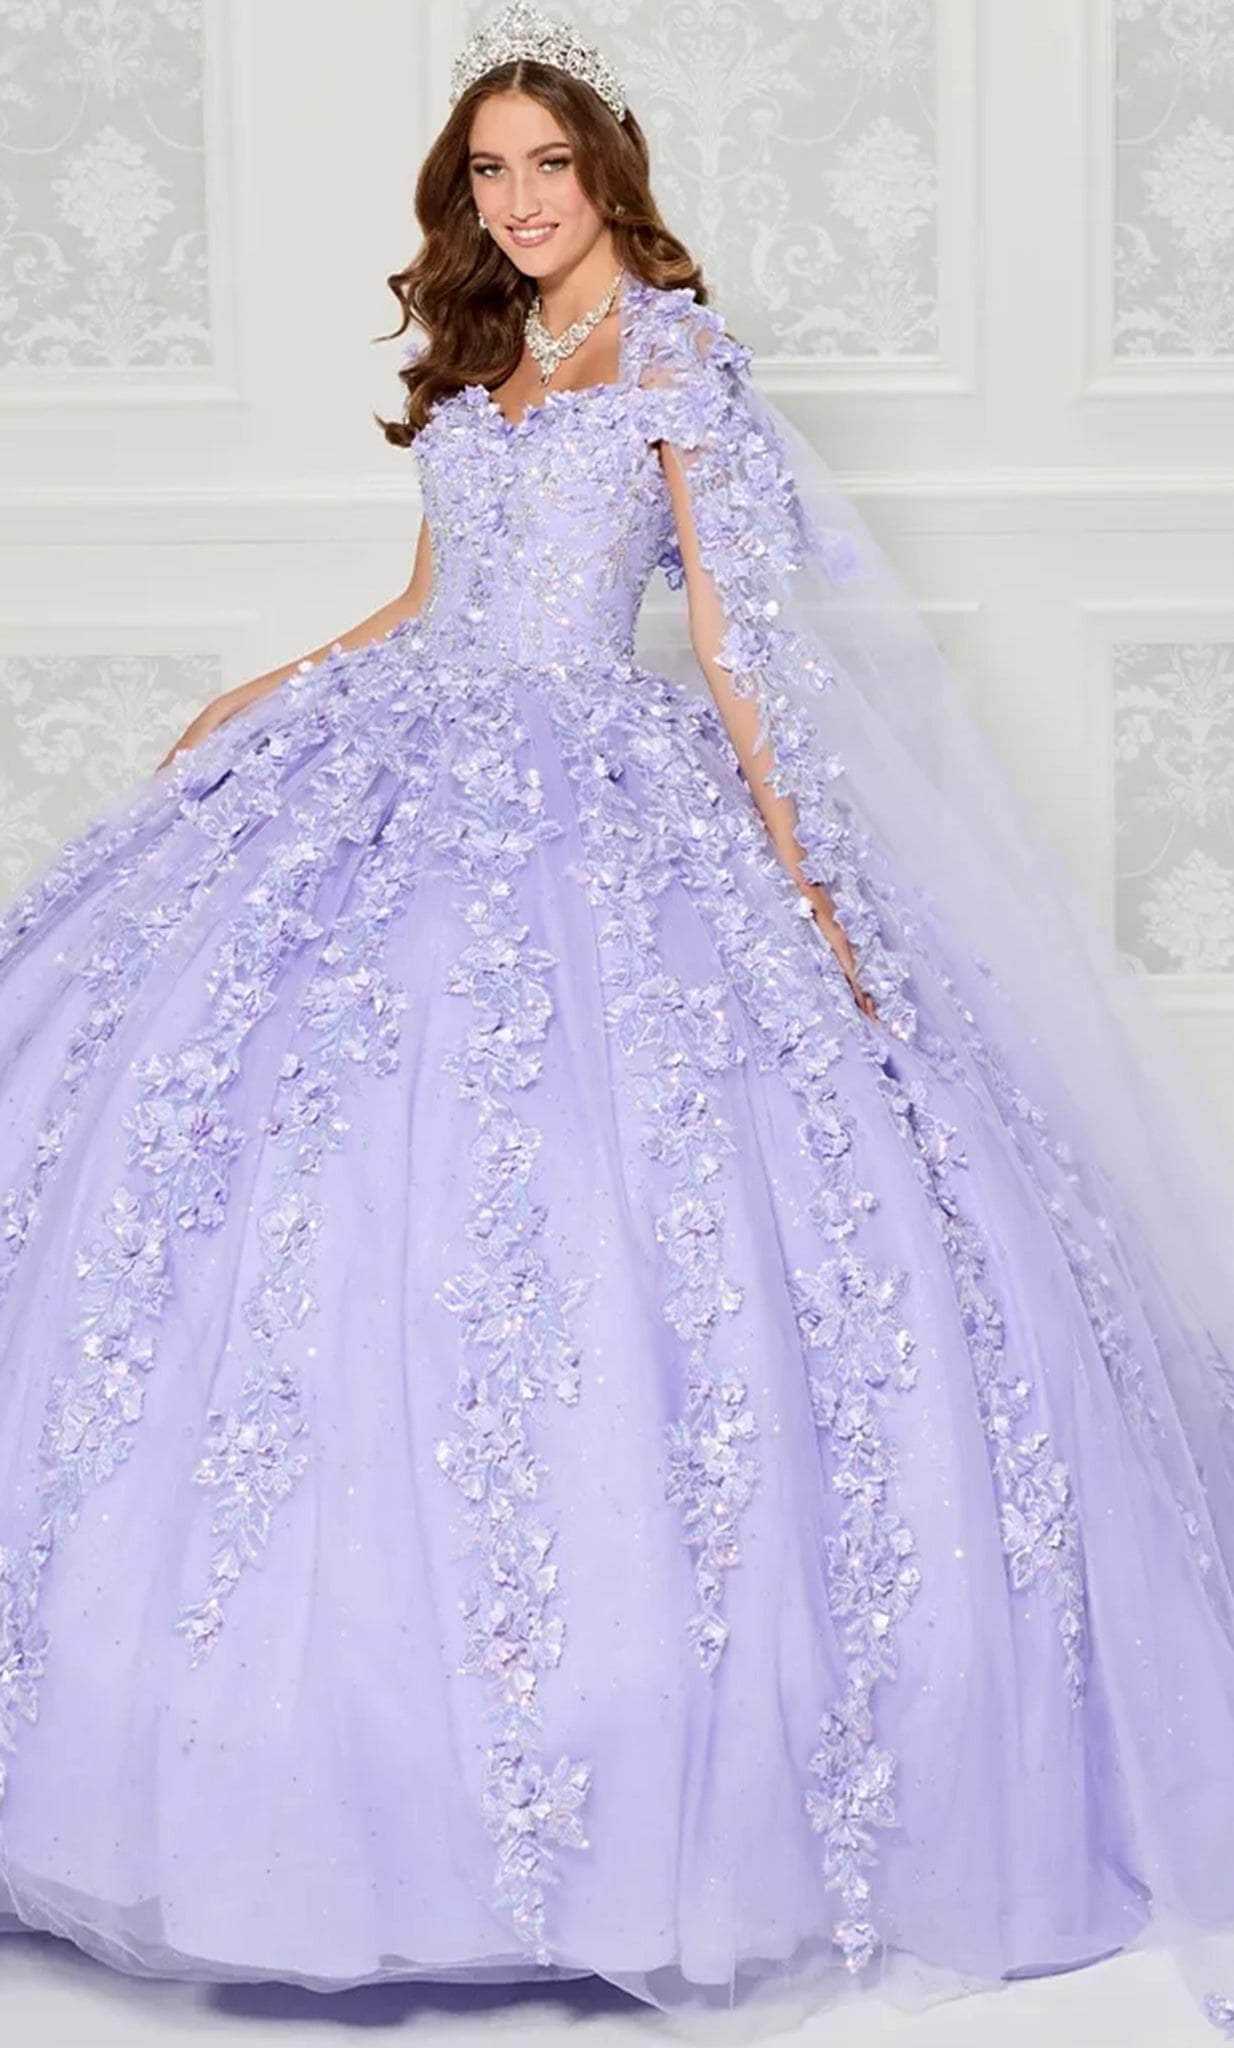 Princesa by Ariana Vara, Princesa by Ariana Vara PR30120 - Off Shoulder Floral Tulle Ballgown